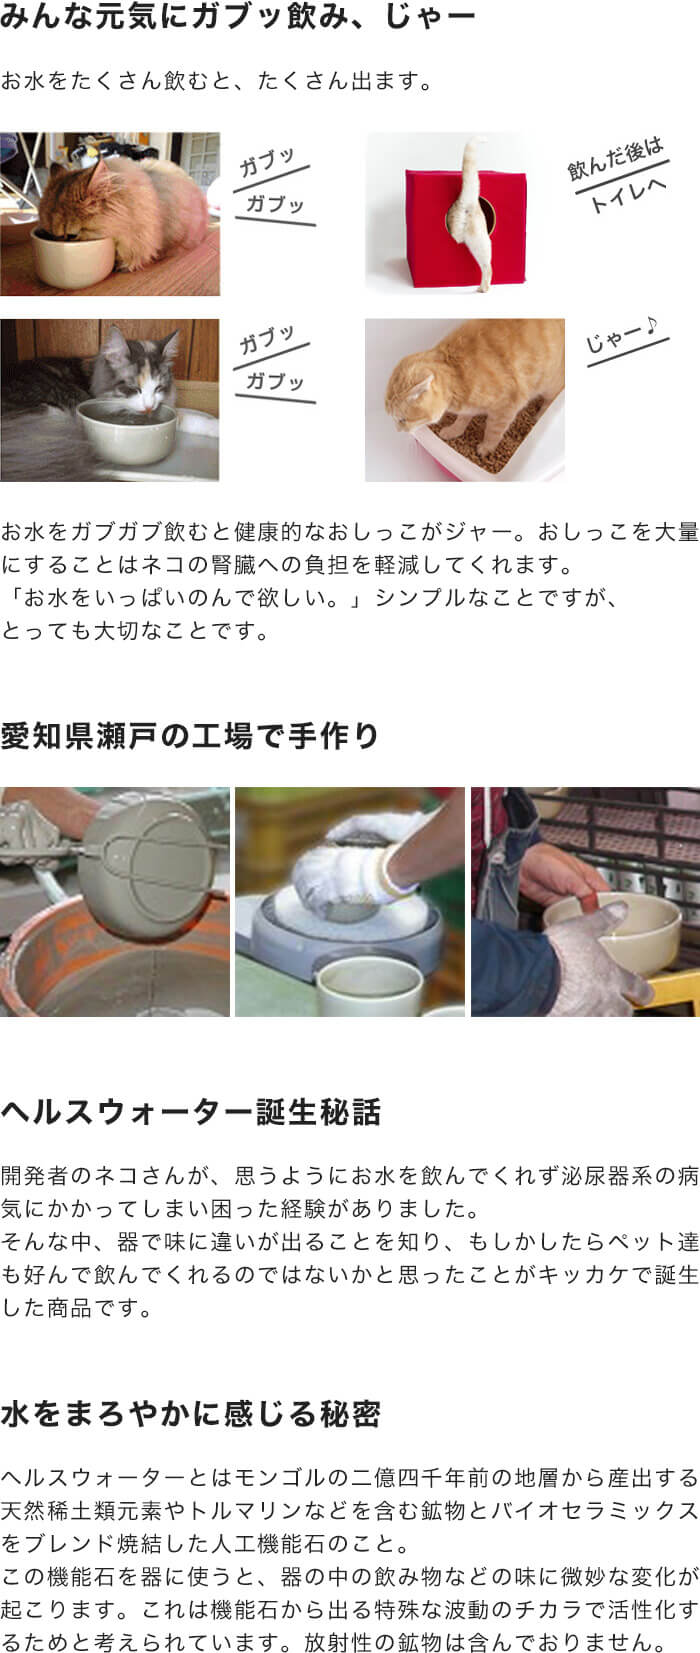 水を飲まない猫のための日本製食器